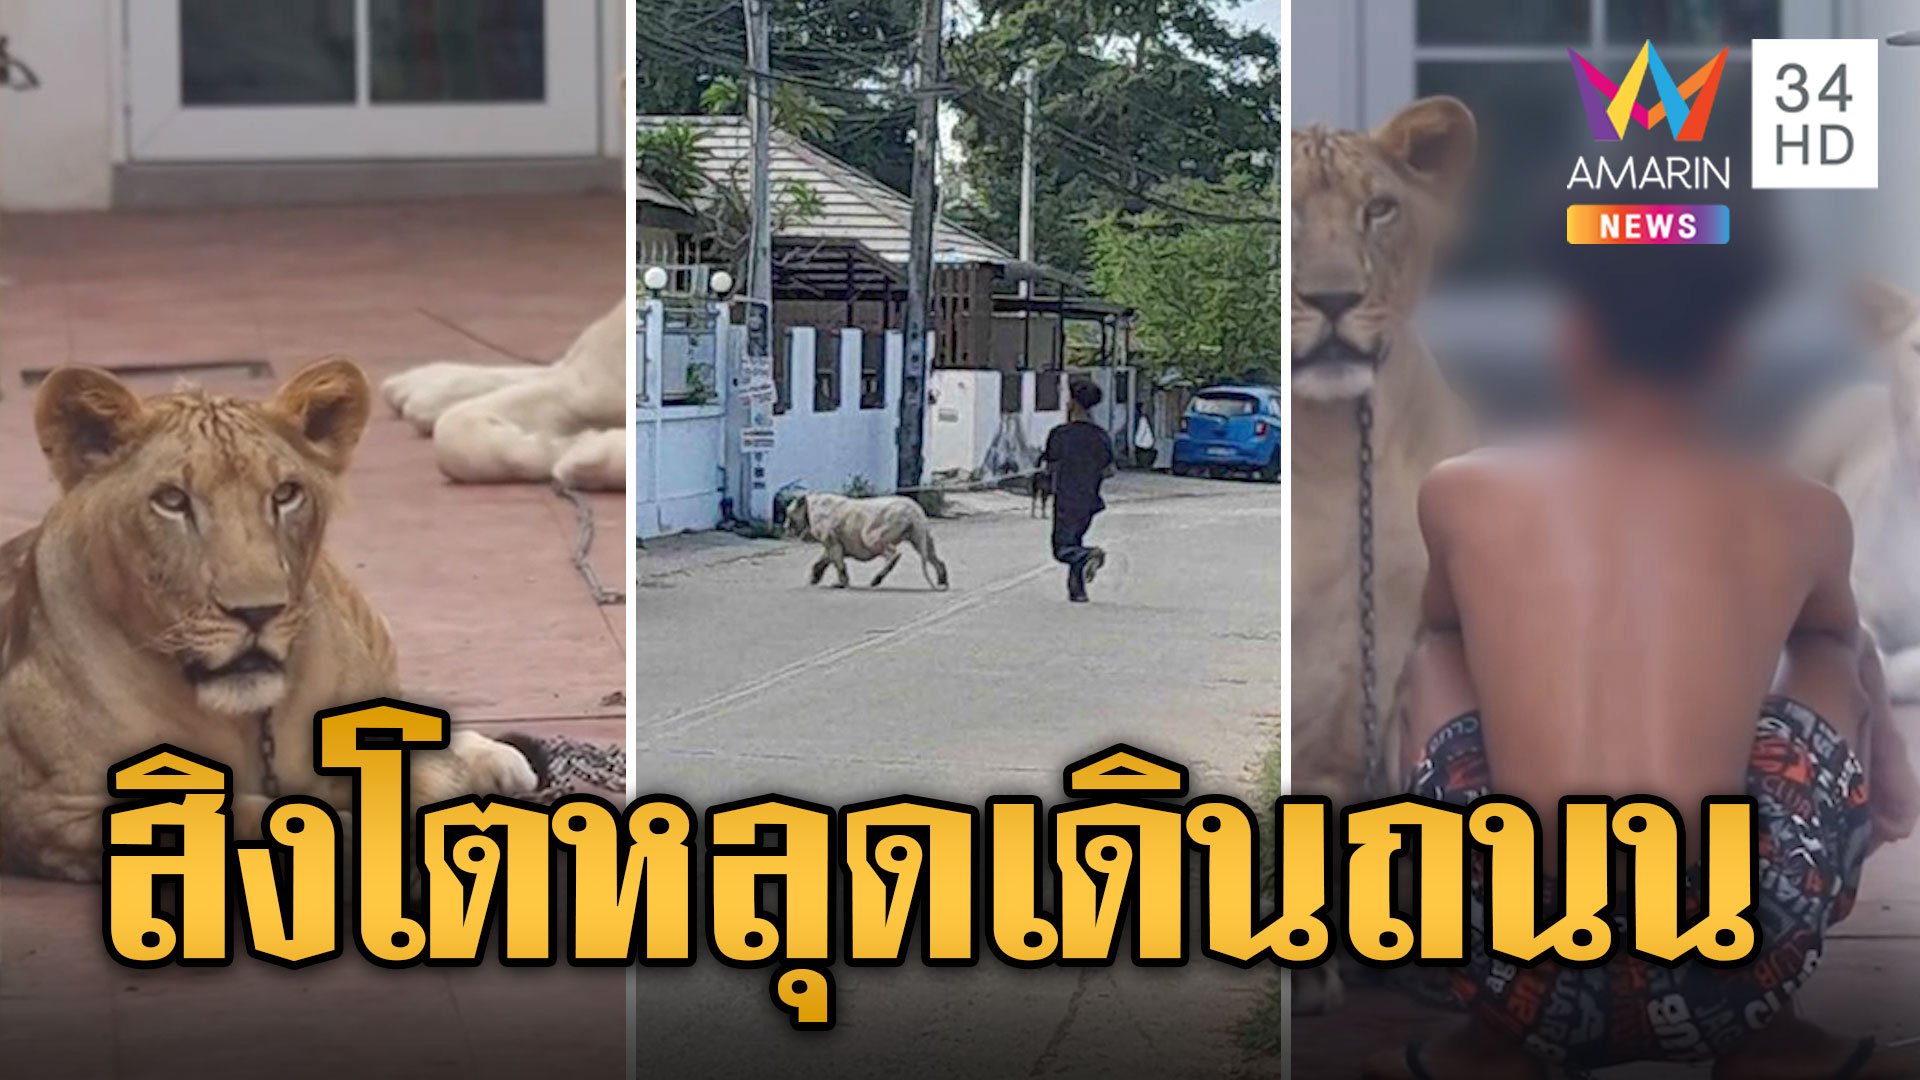 ผวาอีกแล้ว! สิงโต 2 ตัว หลุดออกมาเดินกลางถนน | ข่าวเที่ยงอมรินทร์ | 25 ม.ค. 67 | AMARIN TVHD34